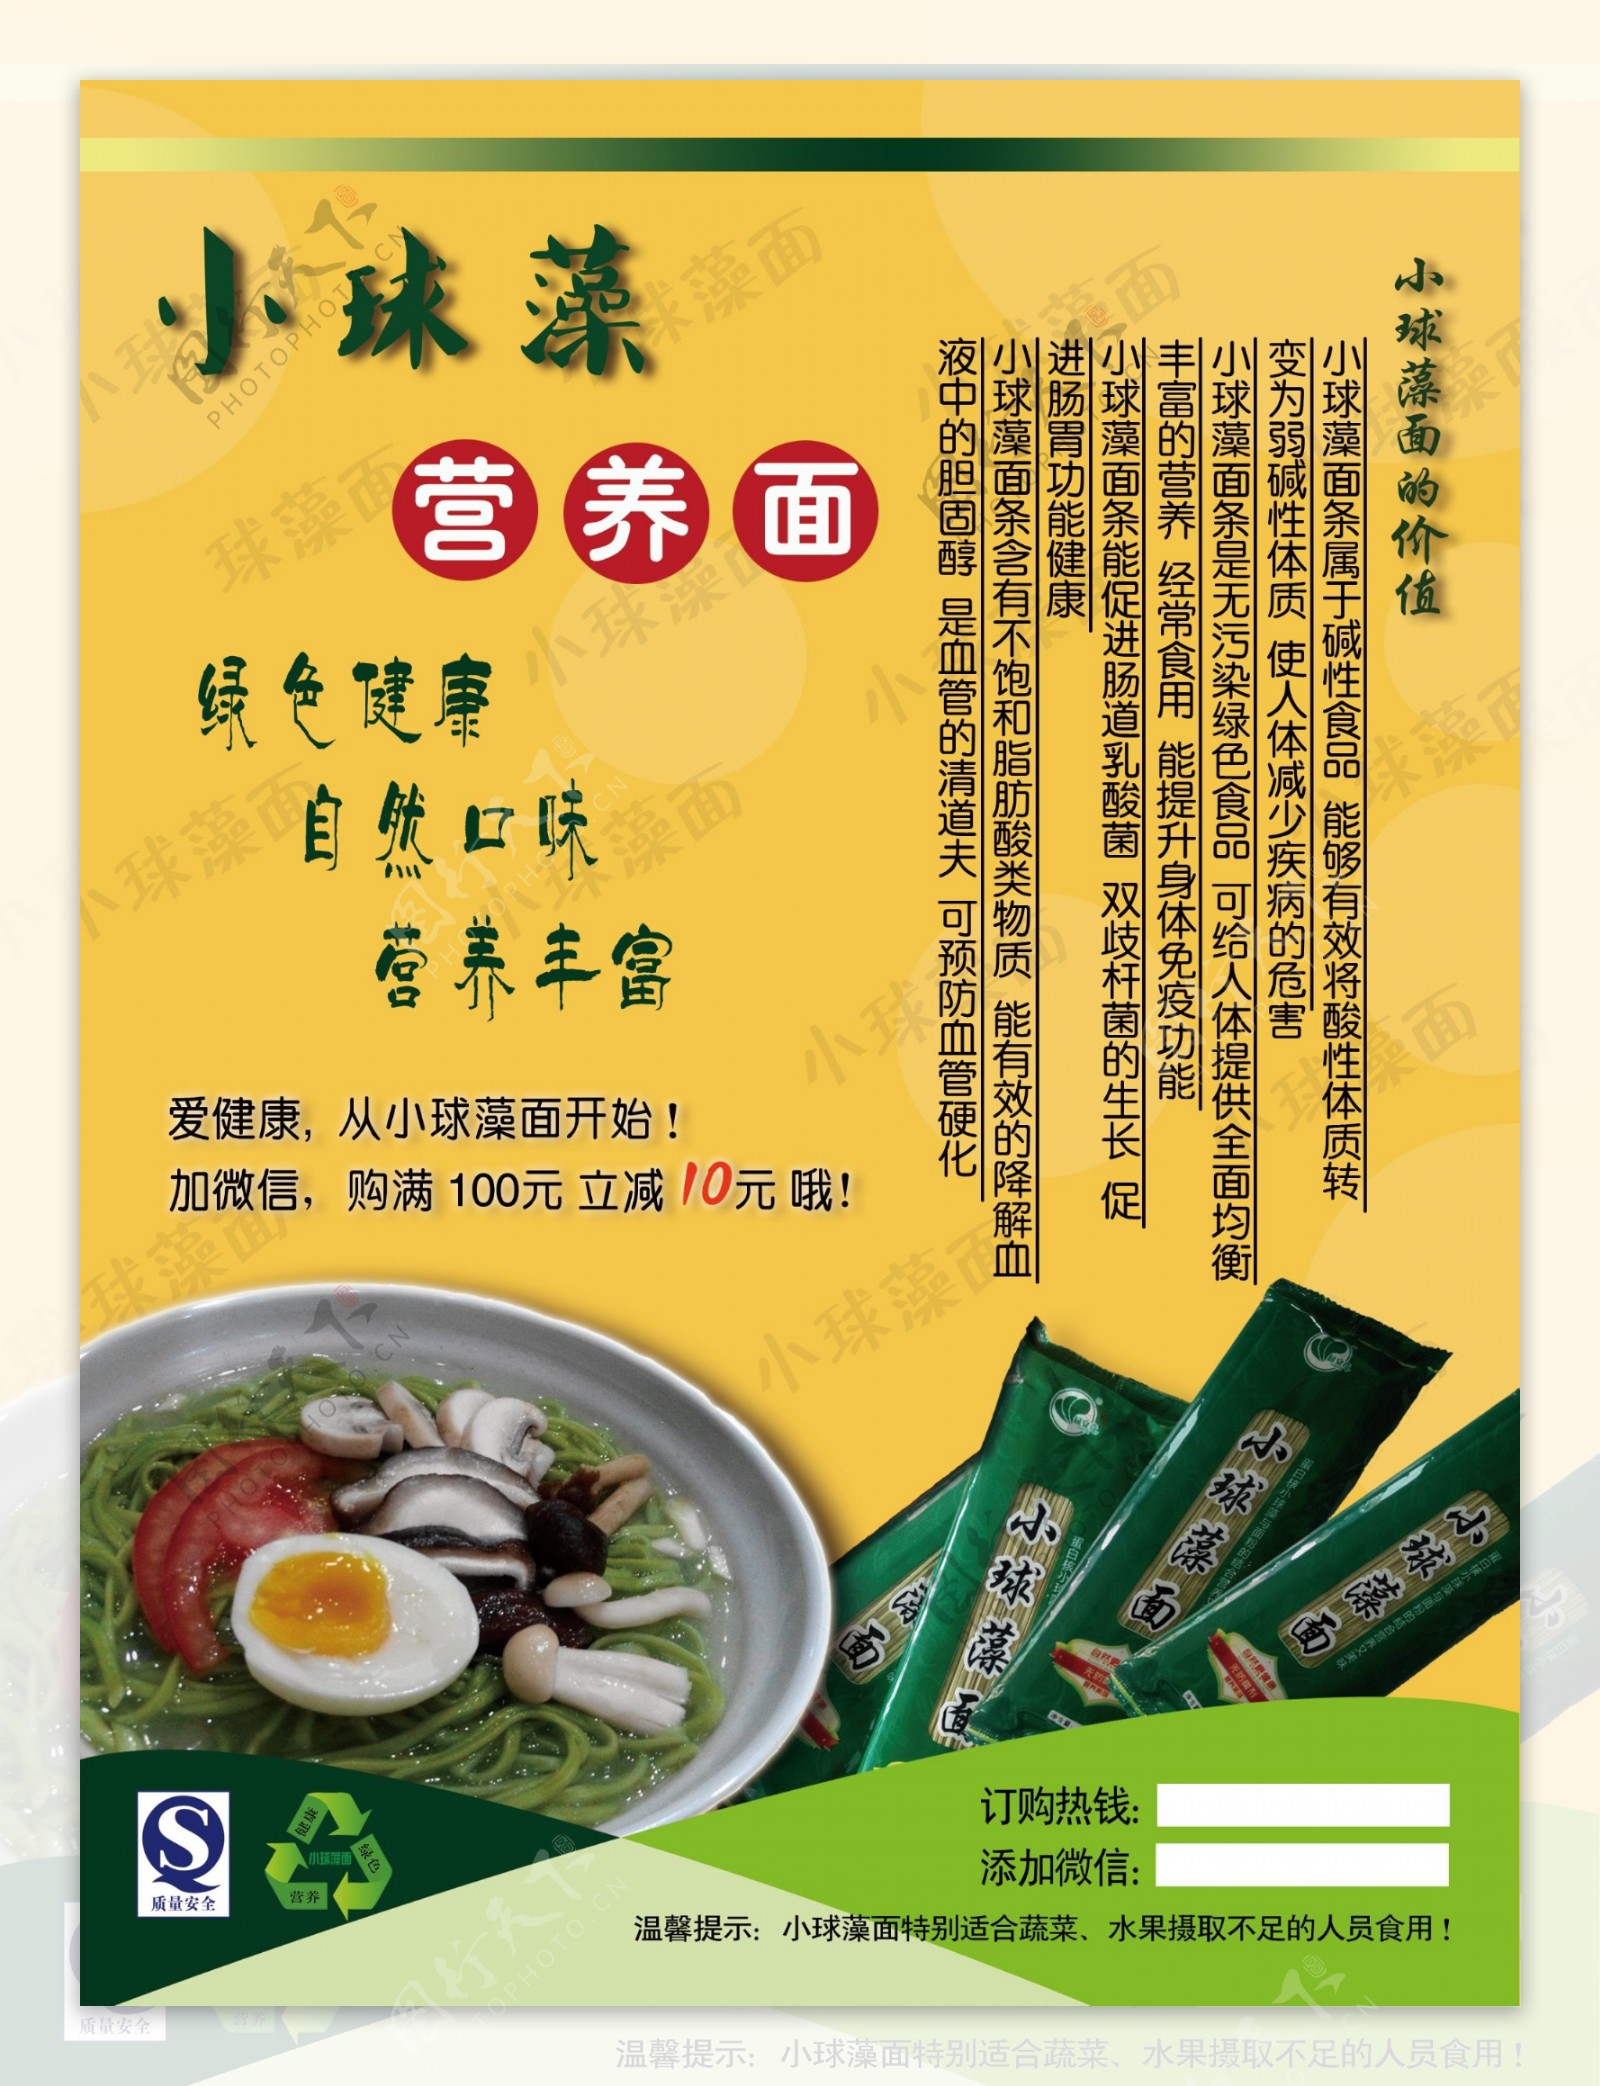 绿色健康食品小球藻面条宣传页